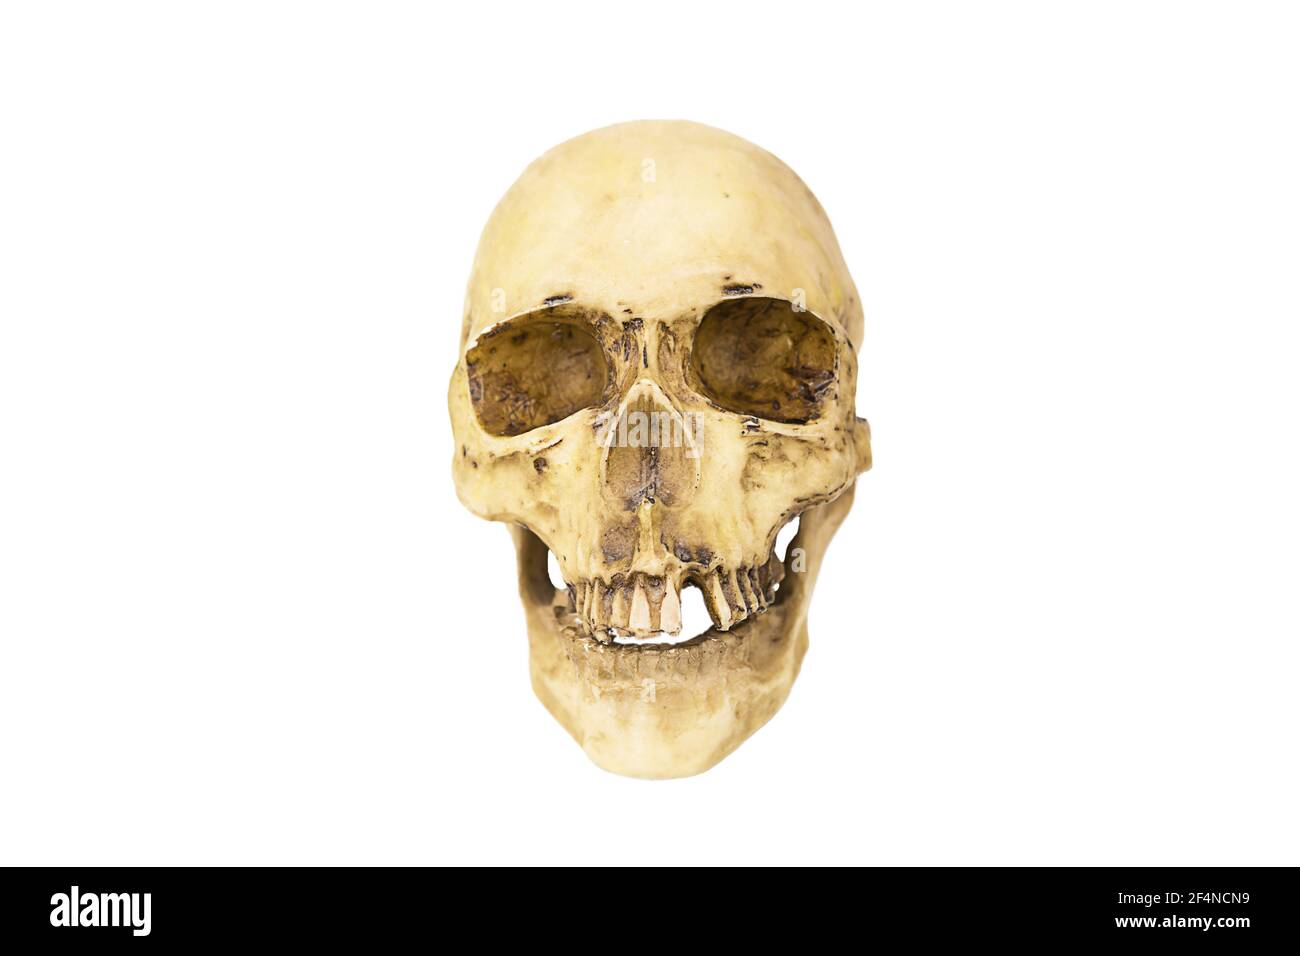 Ein Modell eines menschlichen Schädels auf weißem Hintergrund, isoliert. Kopfknochen, Augenhöhlen, Zähne - ein Konzept für Wissenschaft, Medizin, Halloween. Stockfoto